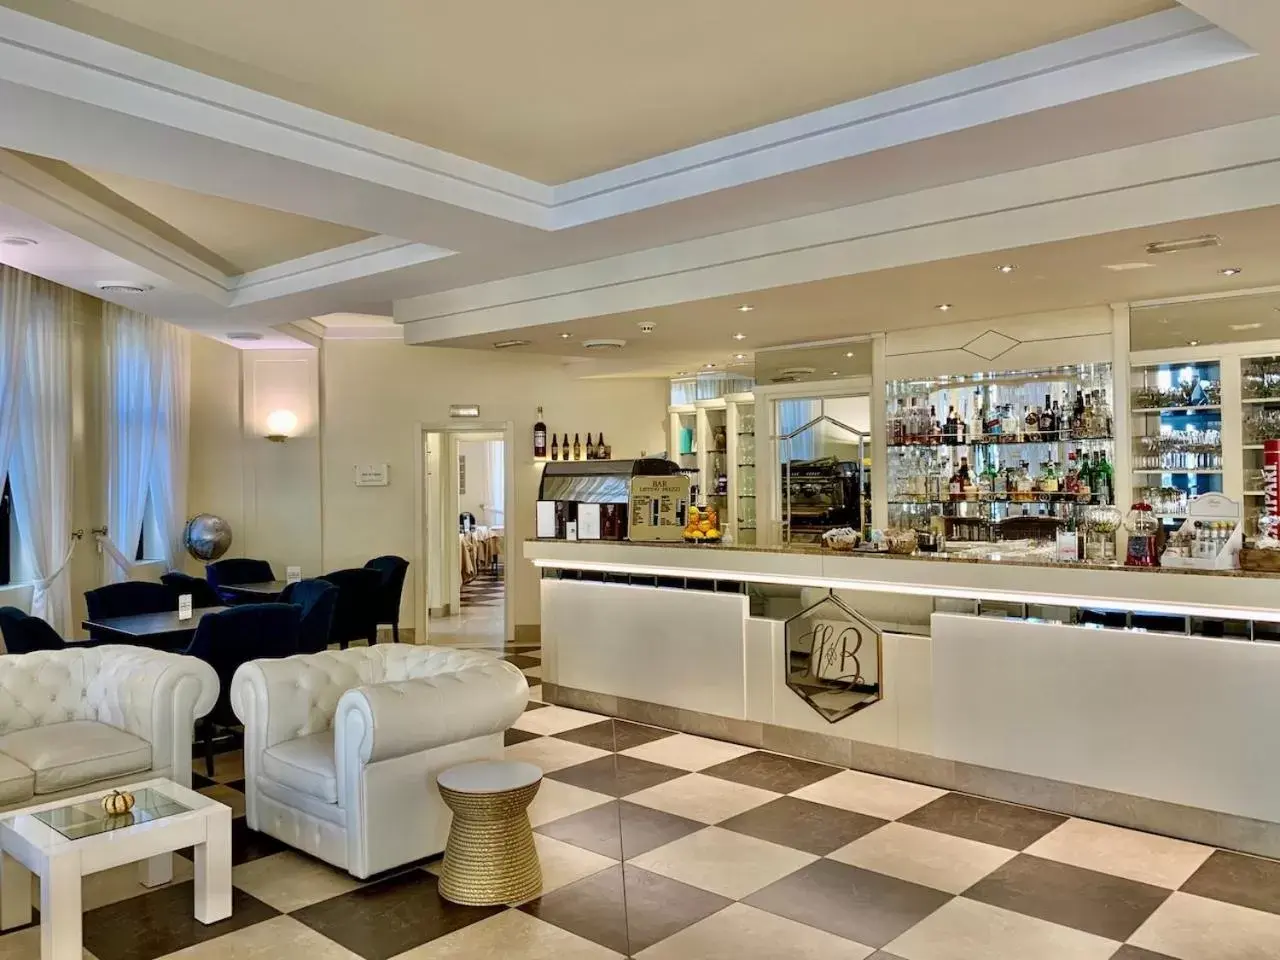 Lobby or reception in Hotel Brescia